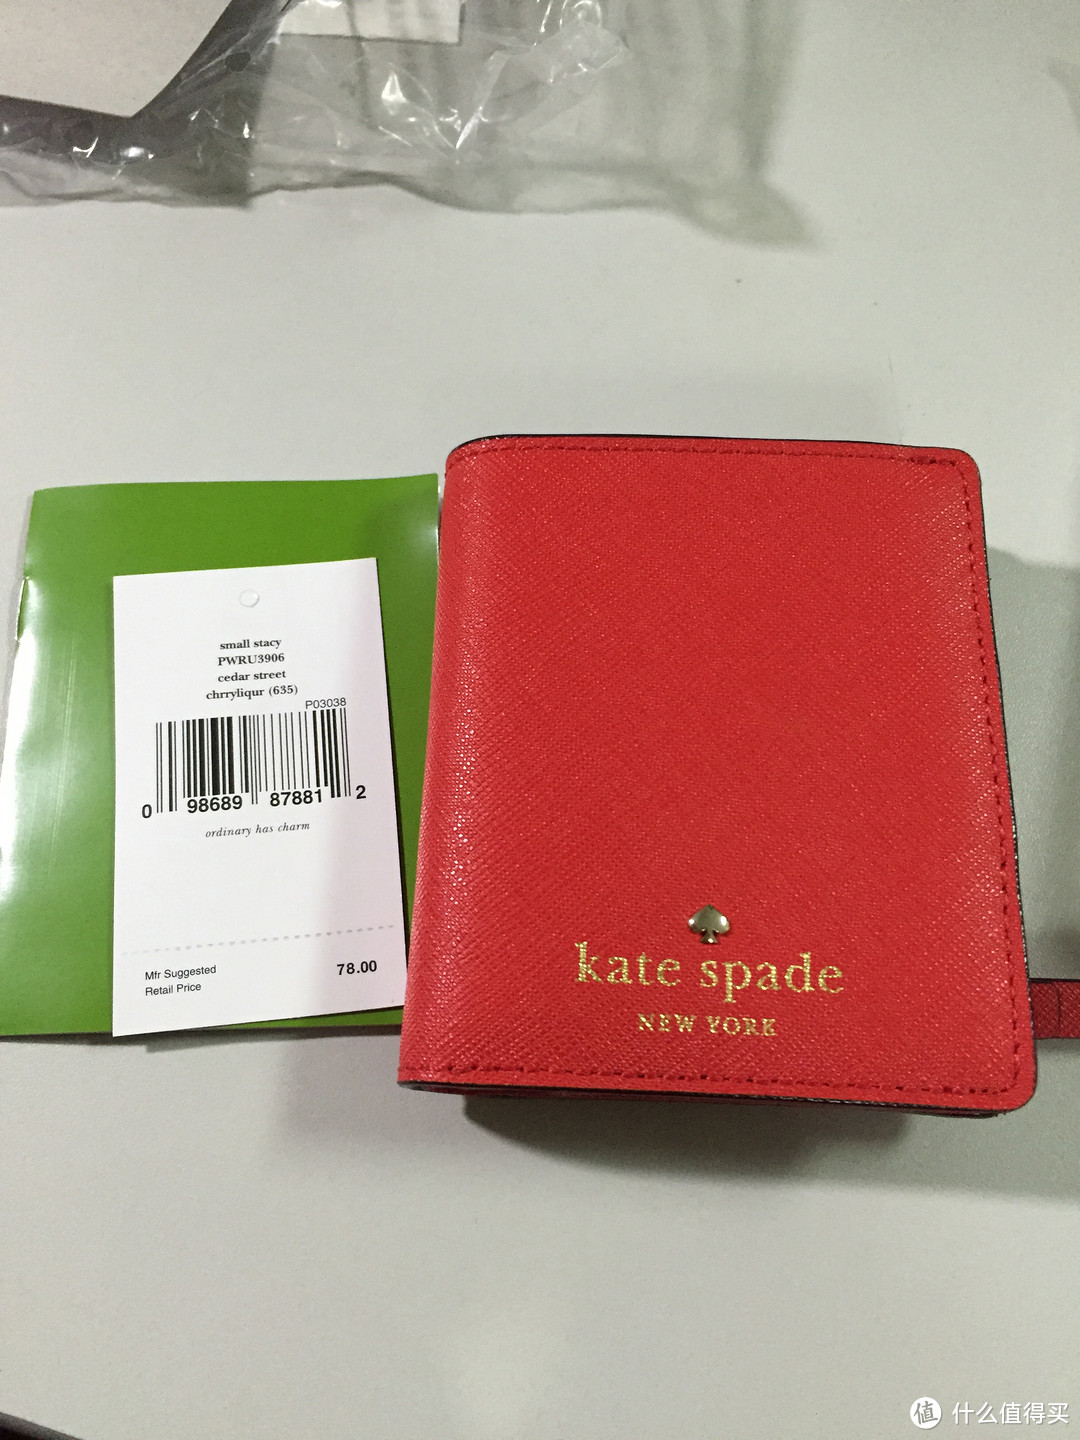 kate spade 美官网打折，真爱的正红色，一激动买了俩短钱包！！